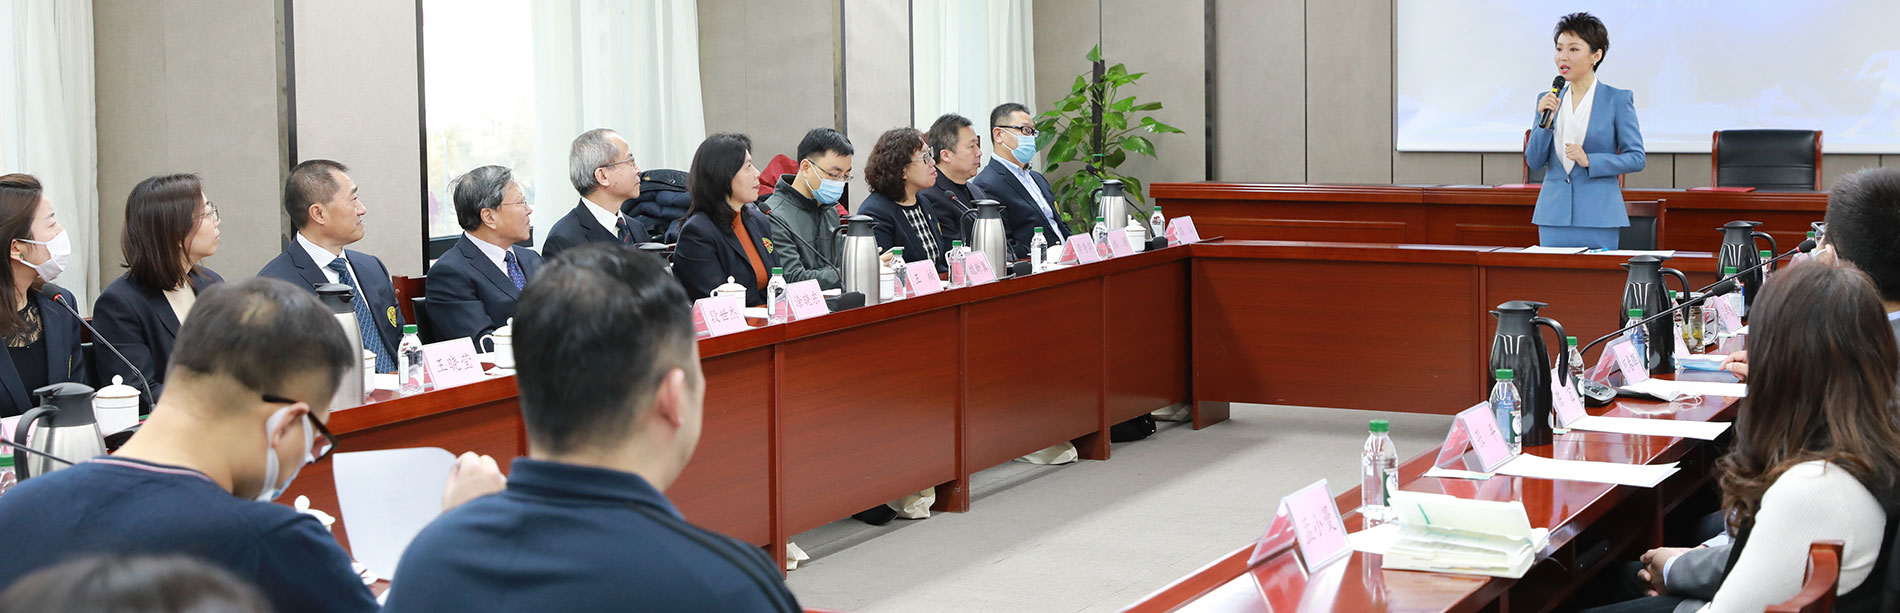 深化体教融合 促进青少年田径项目发展 中国田径协会与中国教育电视台签署战略合作协议